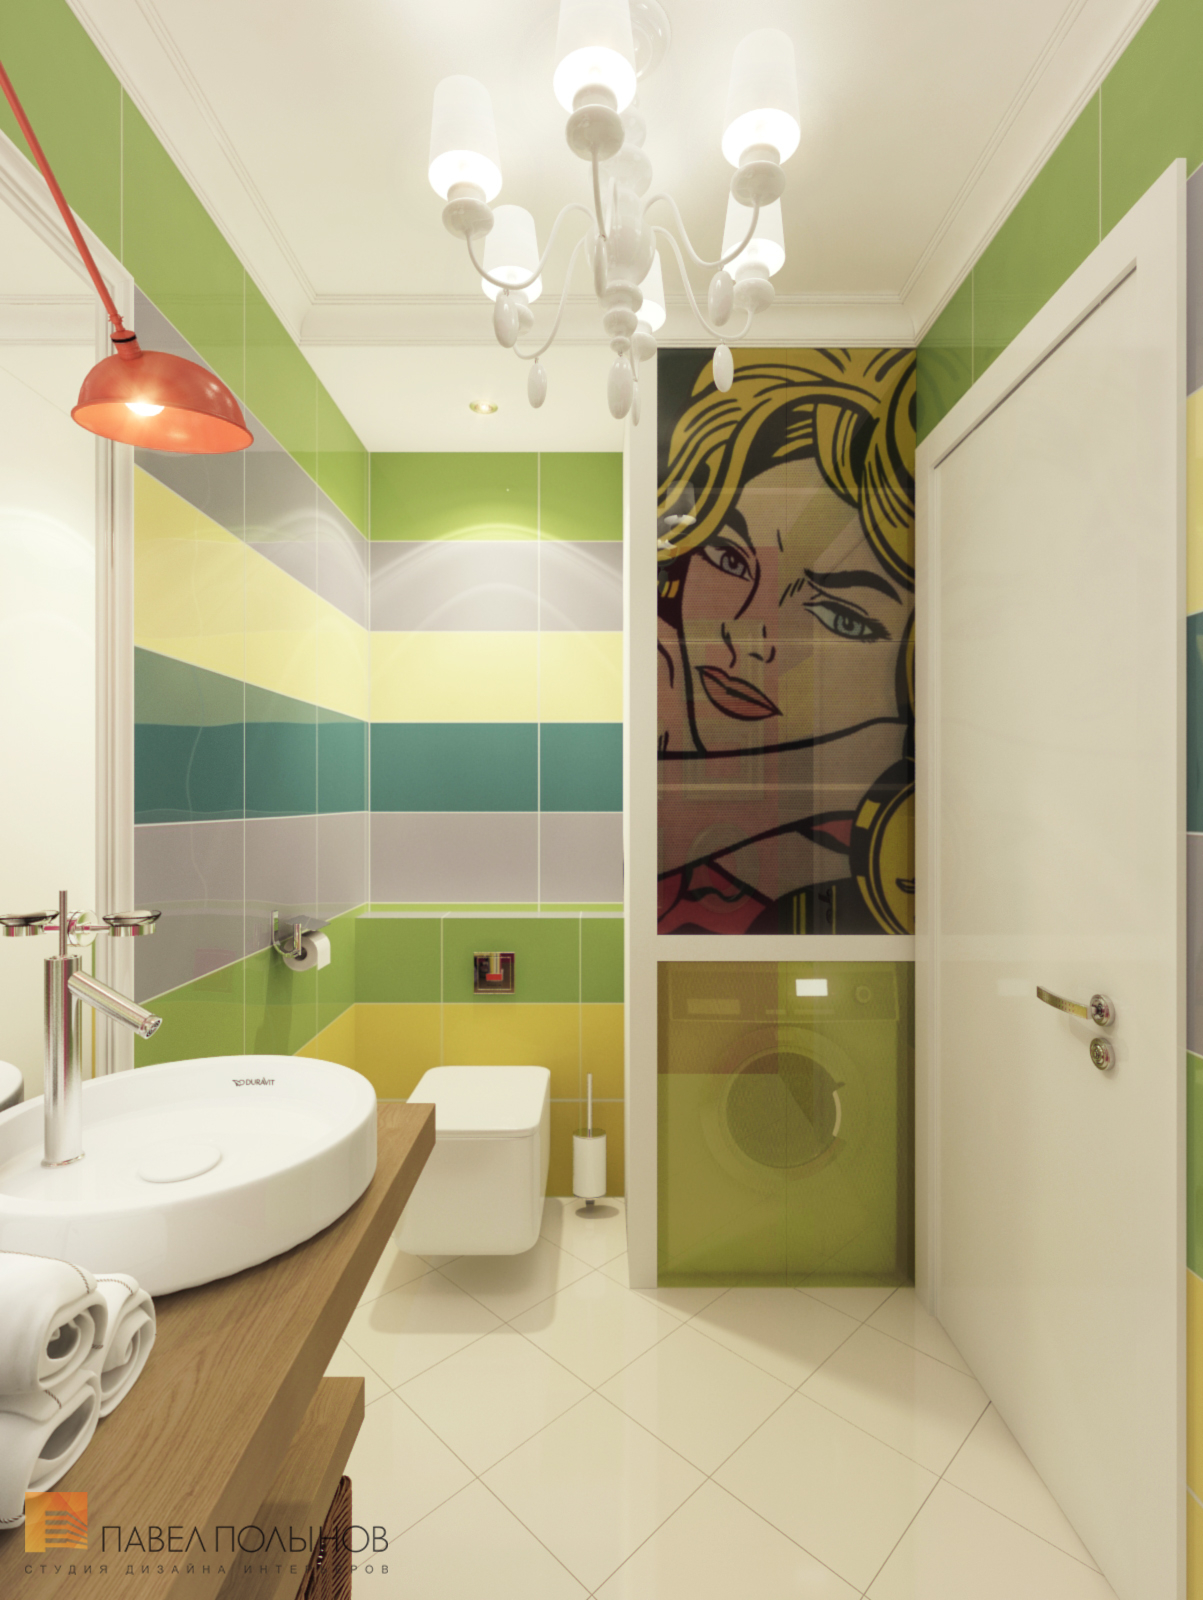 Фото интерьер санузла из проекта «Дизайн интерьера квартиры в ЖК «Ижора Парк»»